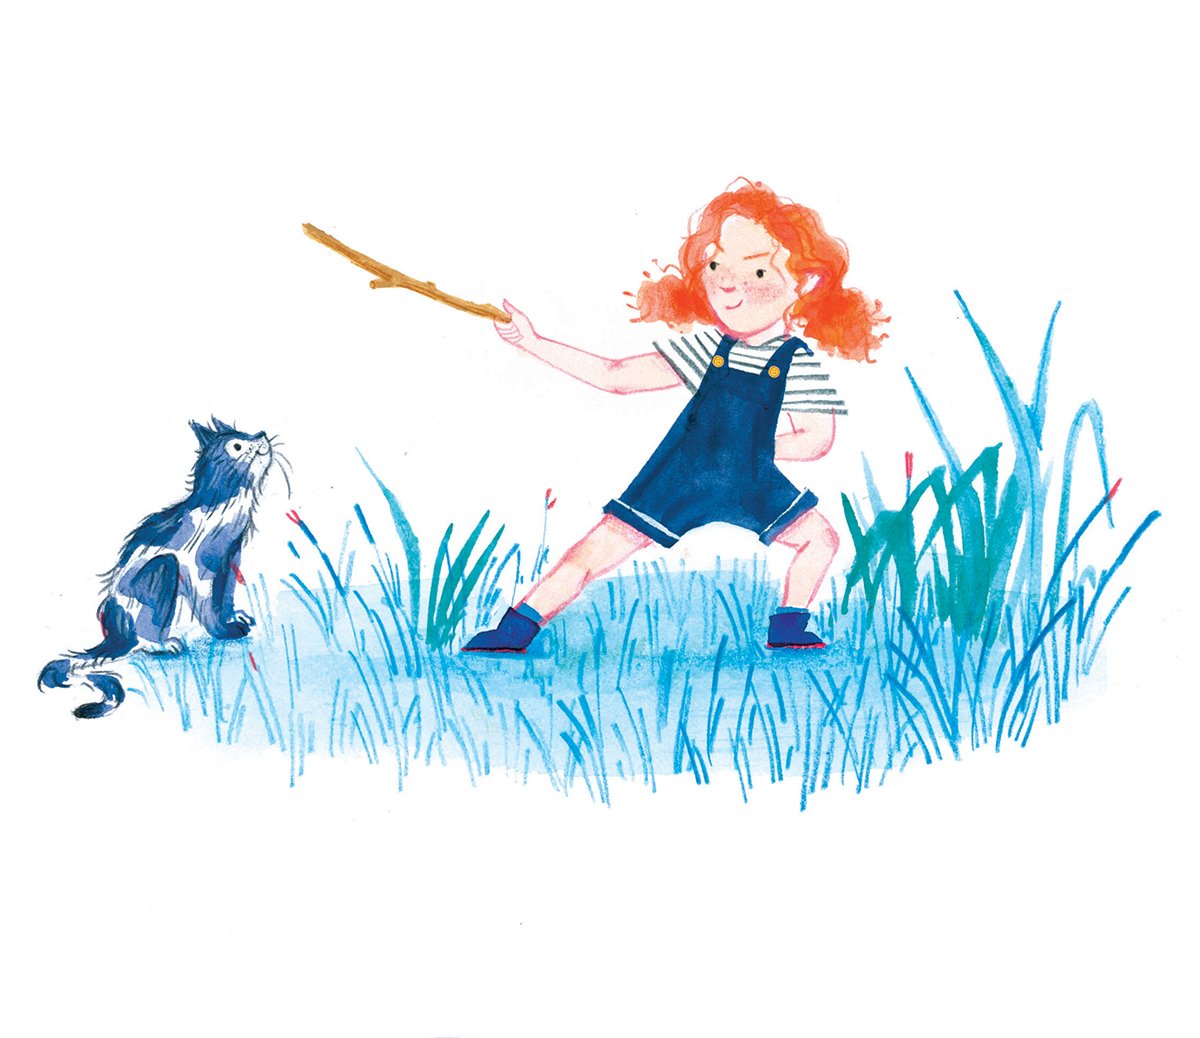 harriet-hobday-little-girl-and-cat-illustration.jpg